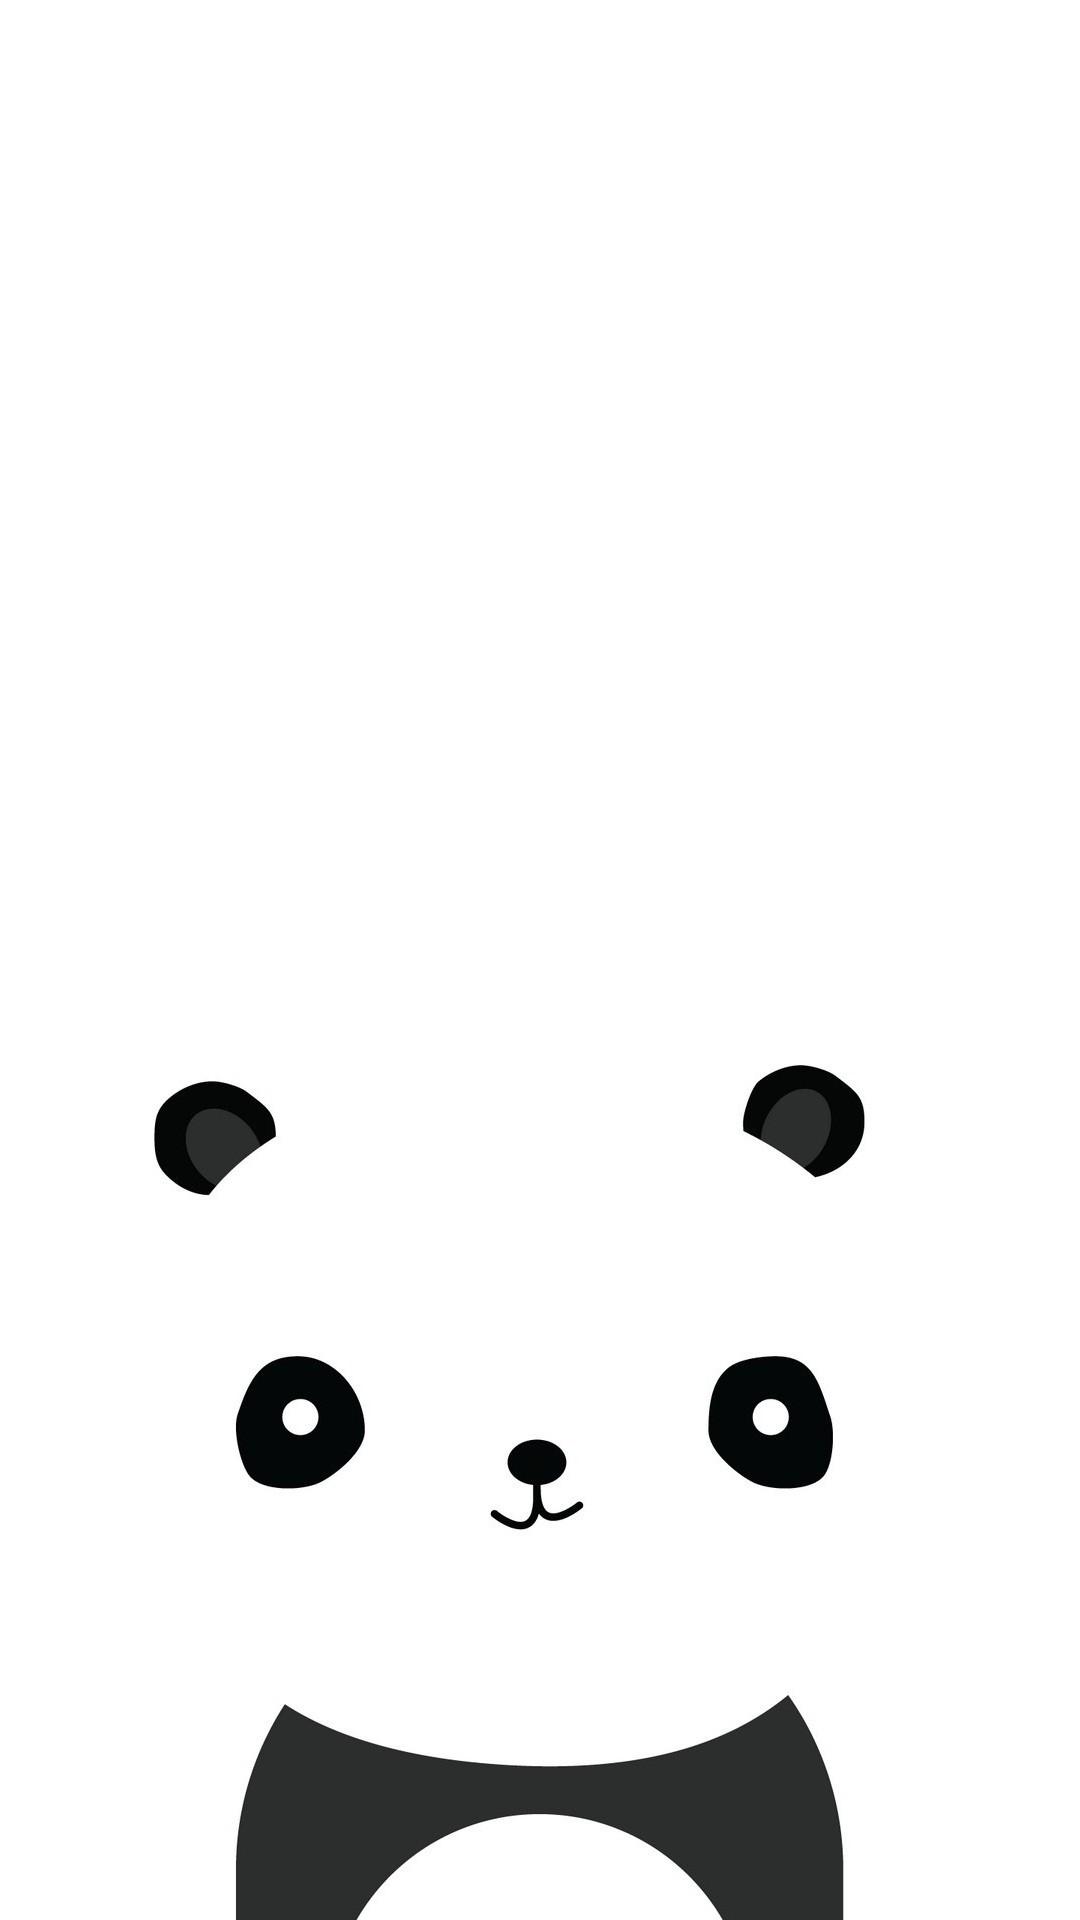 Panda Cute Android Wallpaper Android Wallpaper